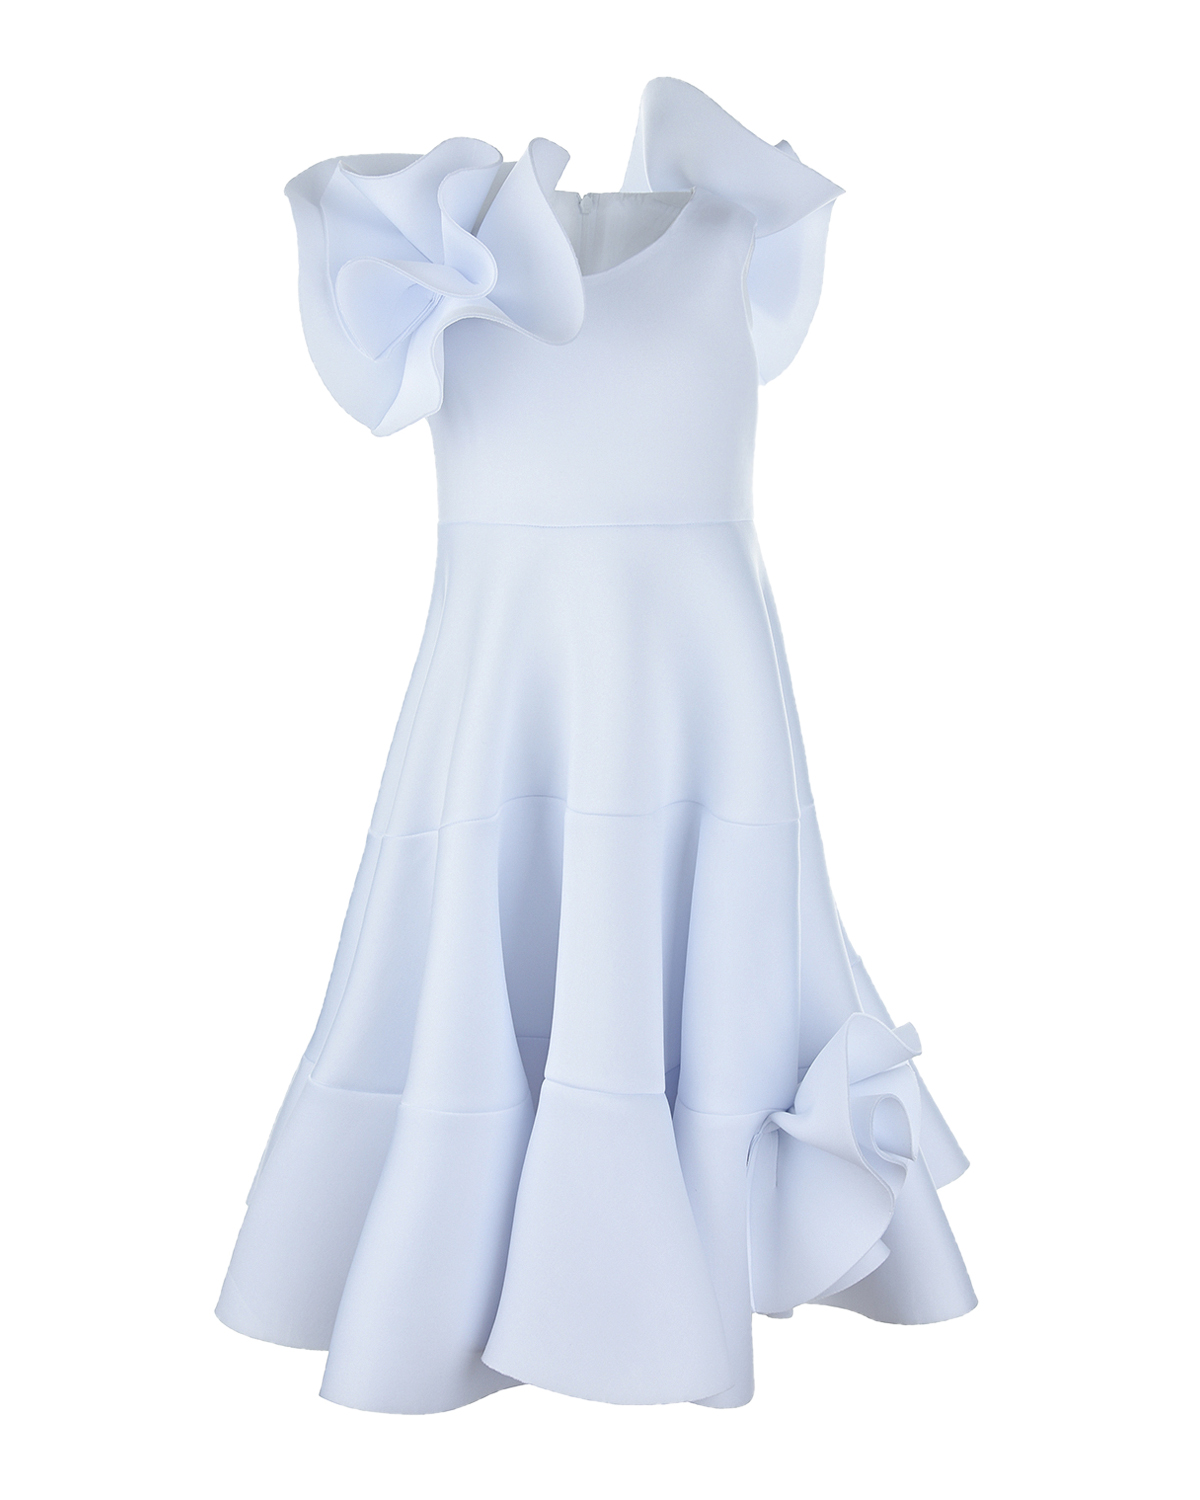 Платье с воланами Nikolia, Белый, 100% полиэстер  - купить со скидкой